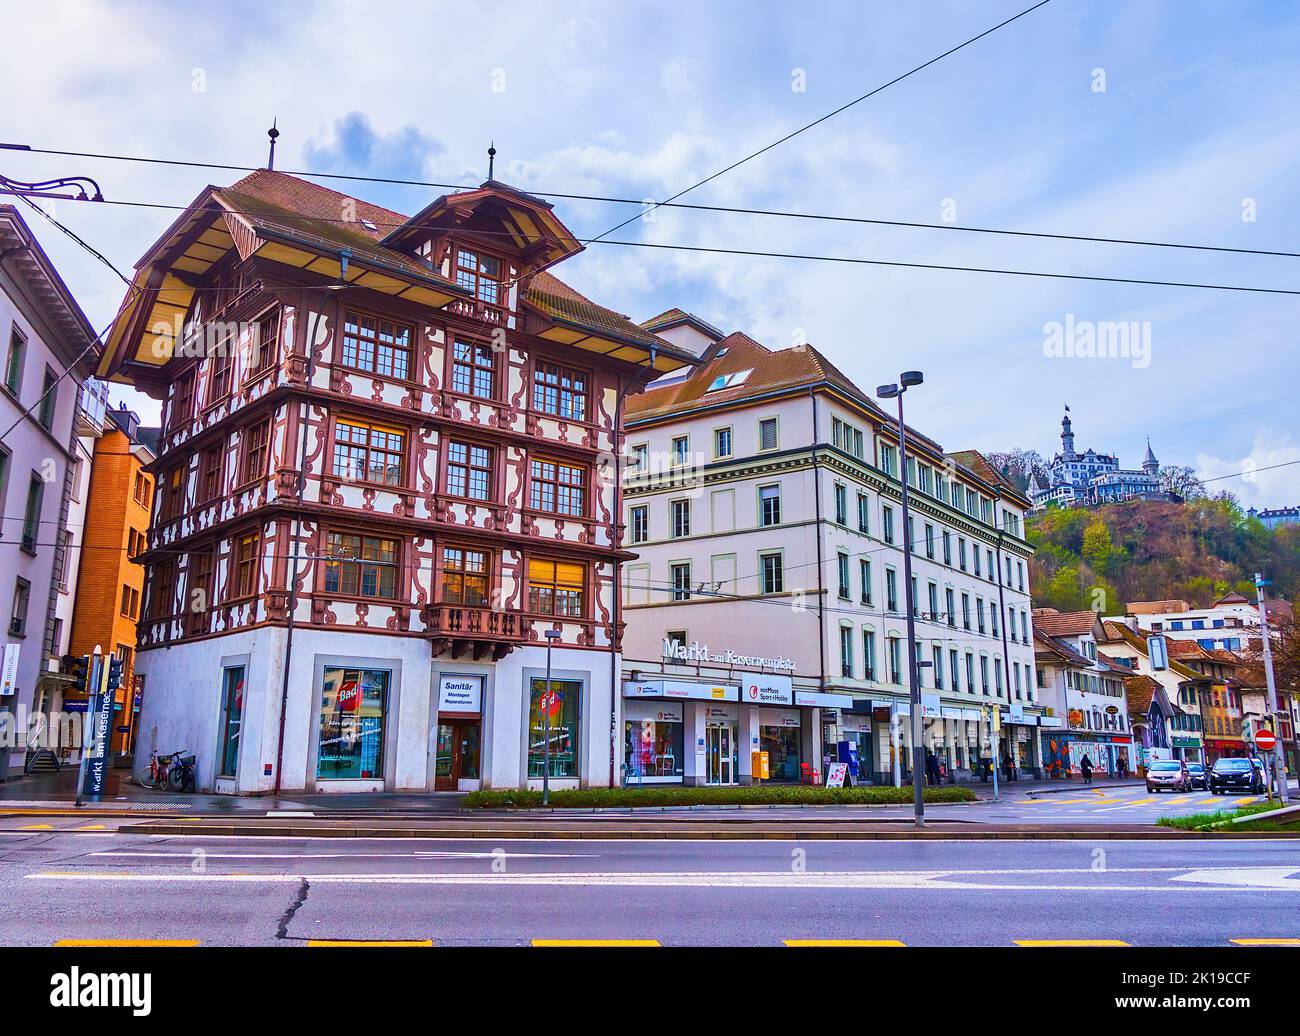 LUCERNE, SWITZERLAND - MARCH 30, 2022: Picturesque half-timbered townhouse on Kasernenplatz, on March 30 in Lucerne, Switzerland Stock Photo